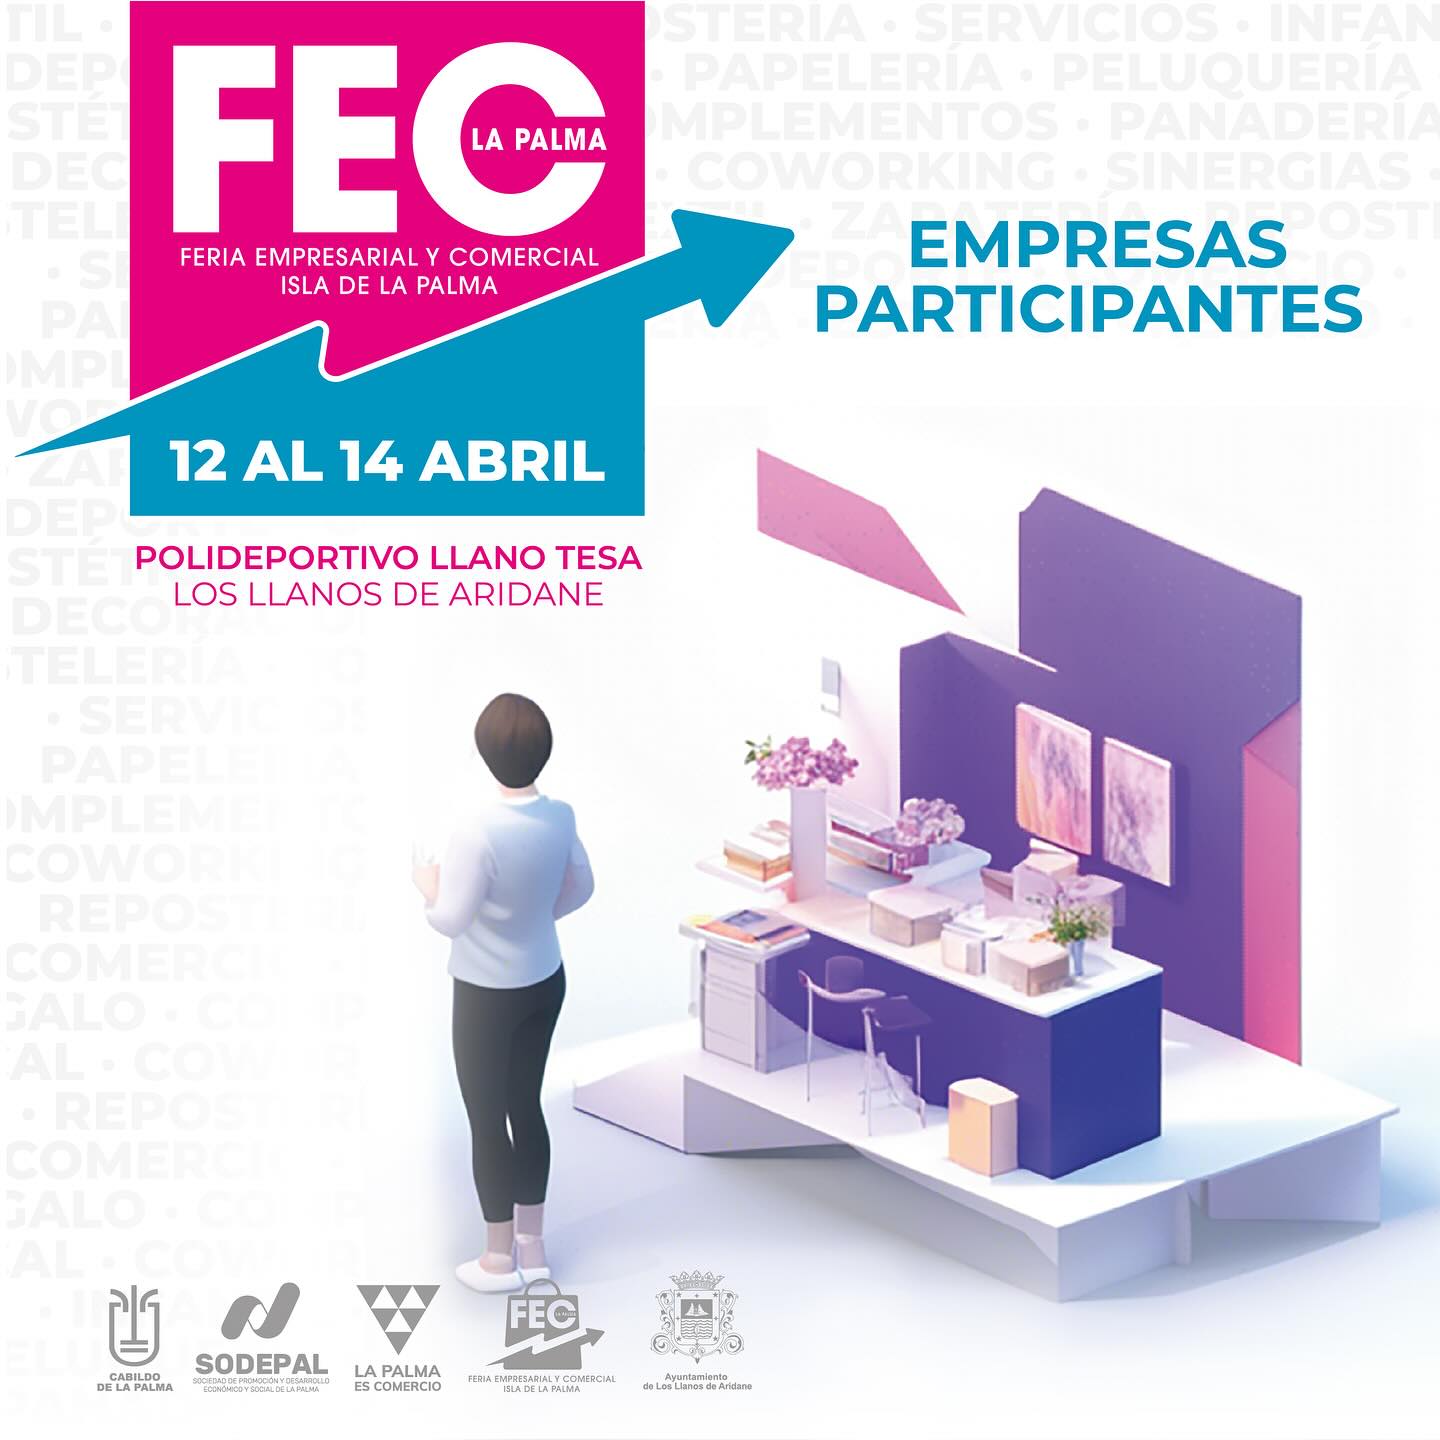 Más de 40 negocios participarán en la nueva edición de la Feria Empresarial y Comercial de La Palma